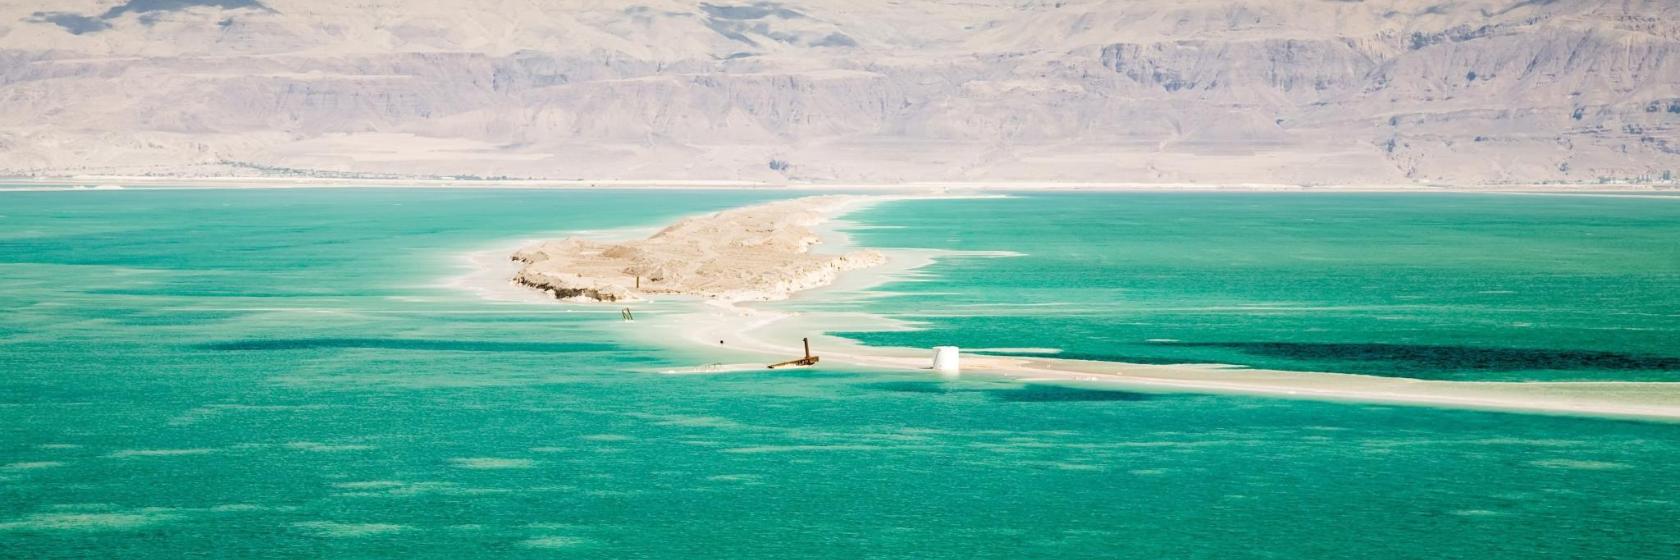 Mar Morto Giordania: i 10 migliori hotel. Mar Morto Giordania, Giordania:  dove soggiornare